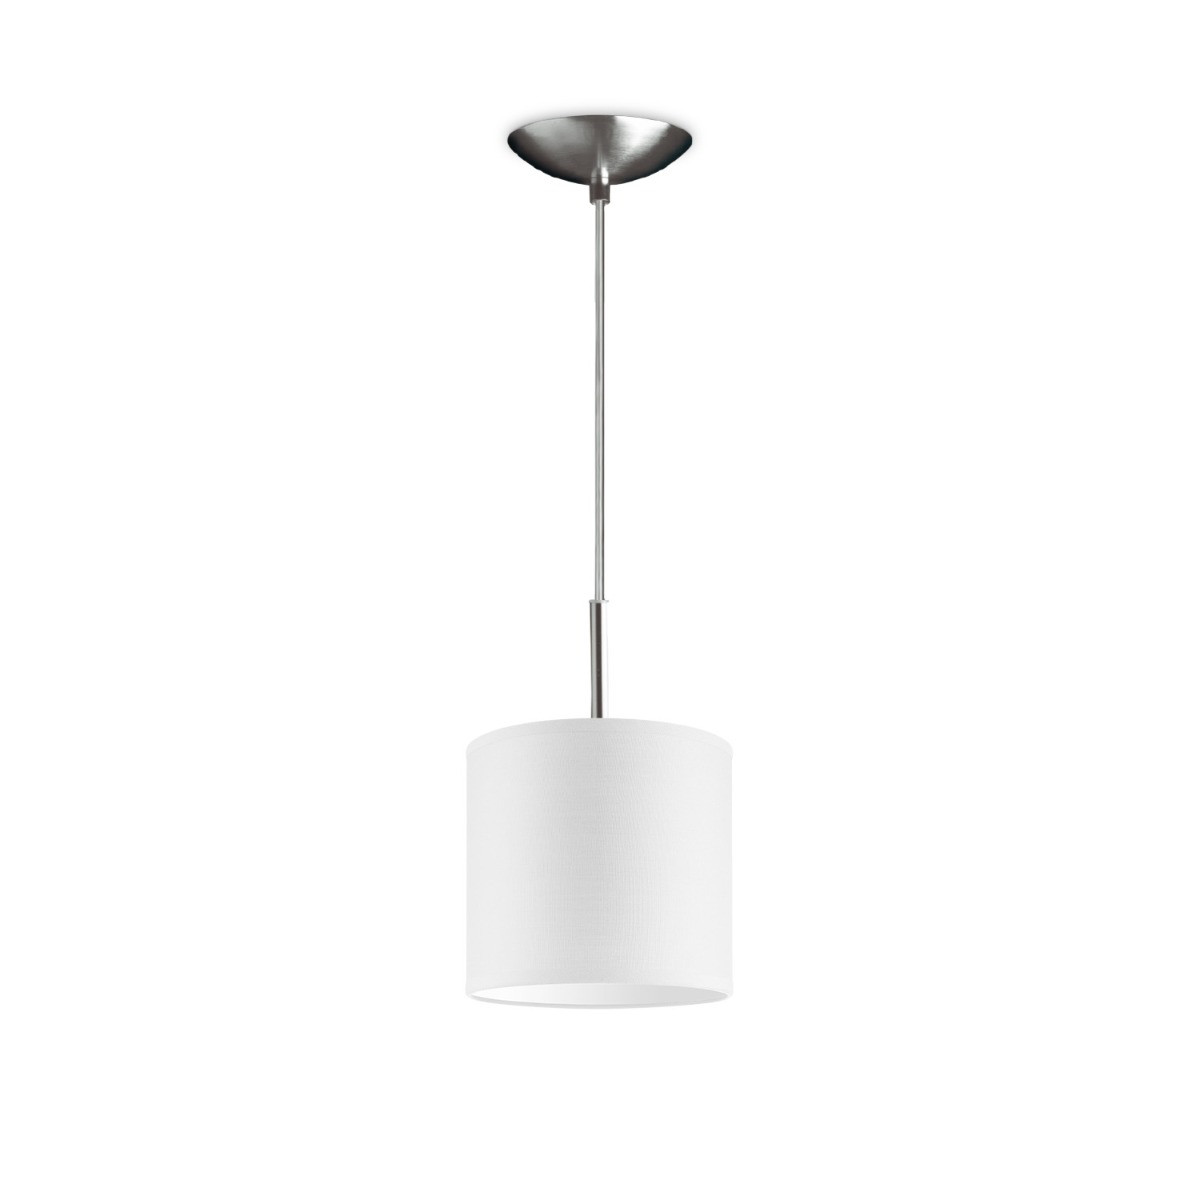 Light depot - hanglamp tube deluxe bling Ø 16 cm - wit - Outlet